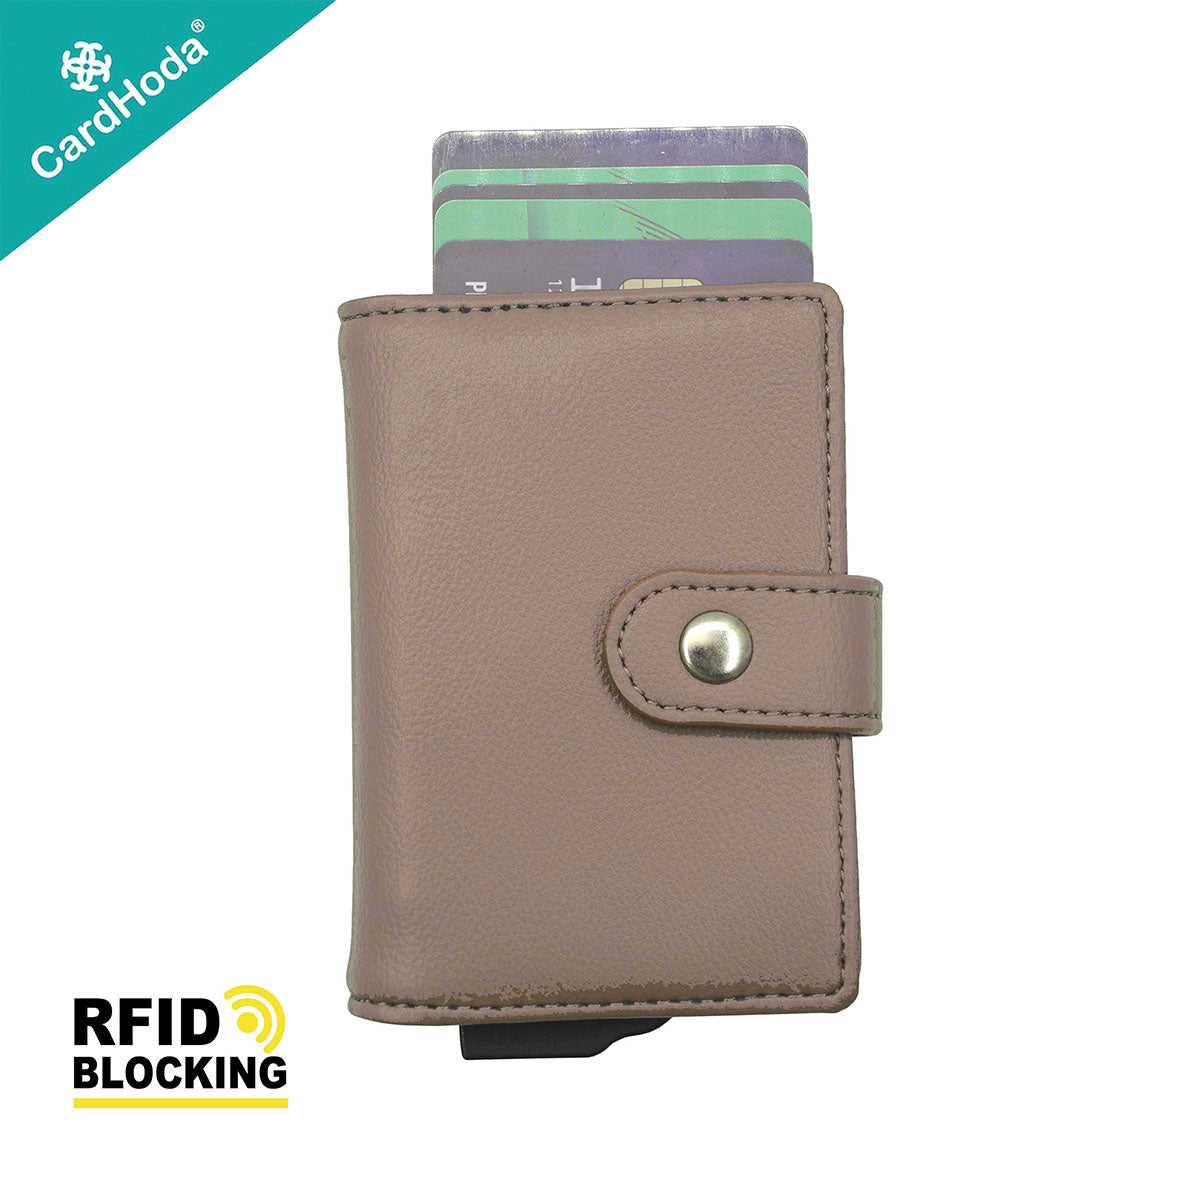 [寄海外] CardHoda - Mini RFID 防盜卡 PU 皮款銀包（玄米灰 / 迷霧灰 / 可可啡）H10023-BON